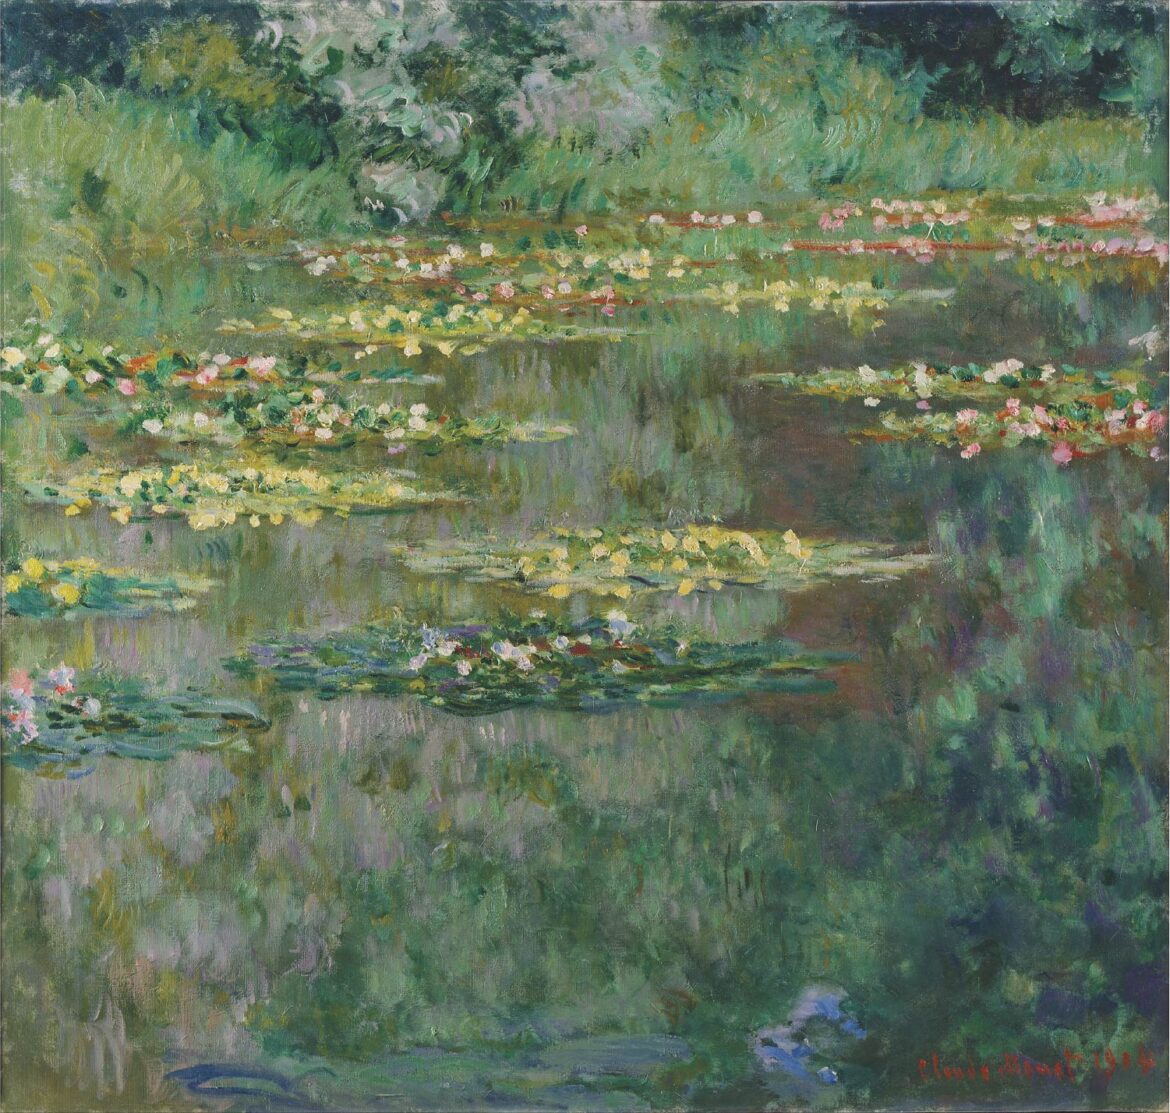 【無料壁紙】クロード・モネ「睡蓮の池 (1904)」 / Claude Monet_Le Bassin des Nympheas (1904)